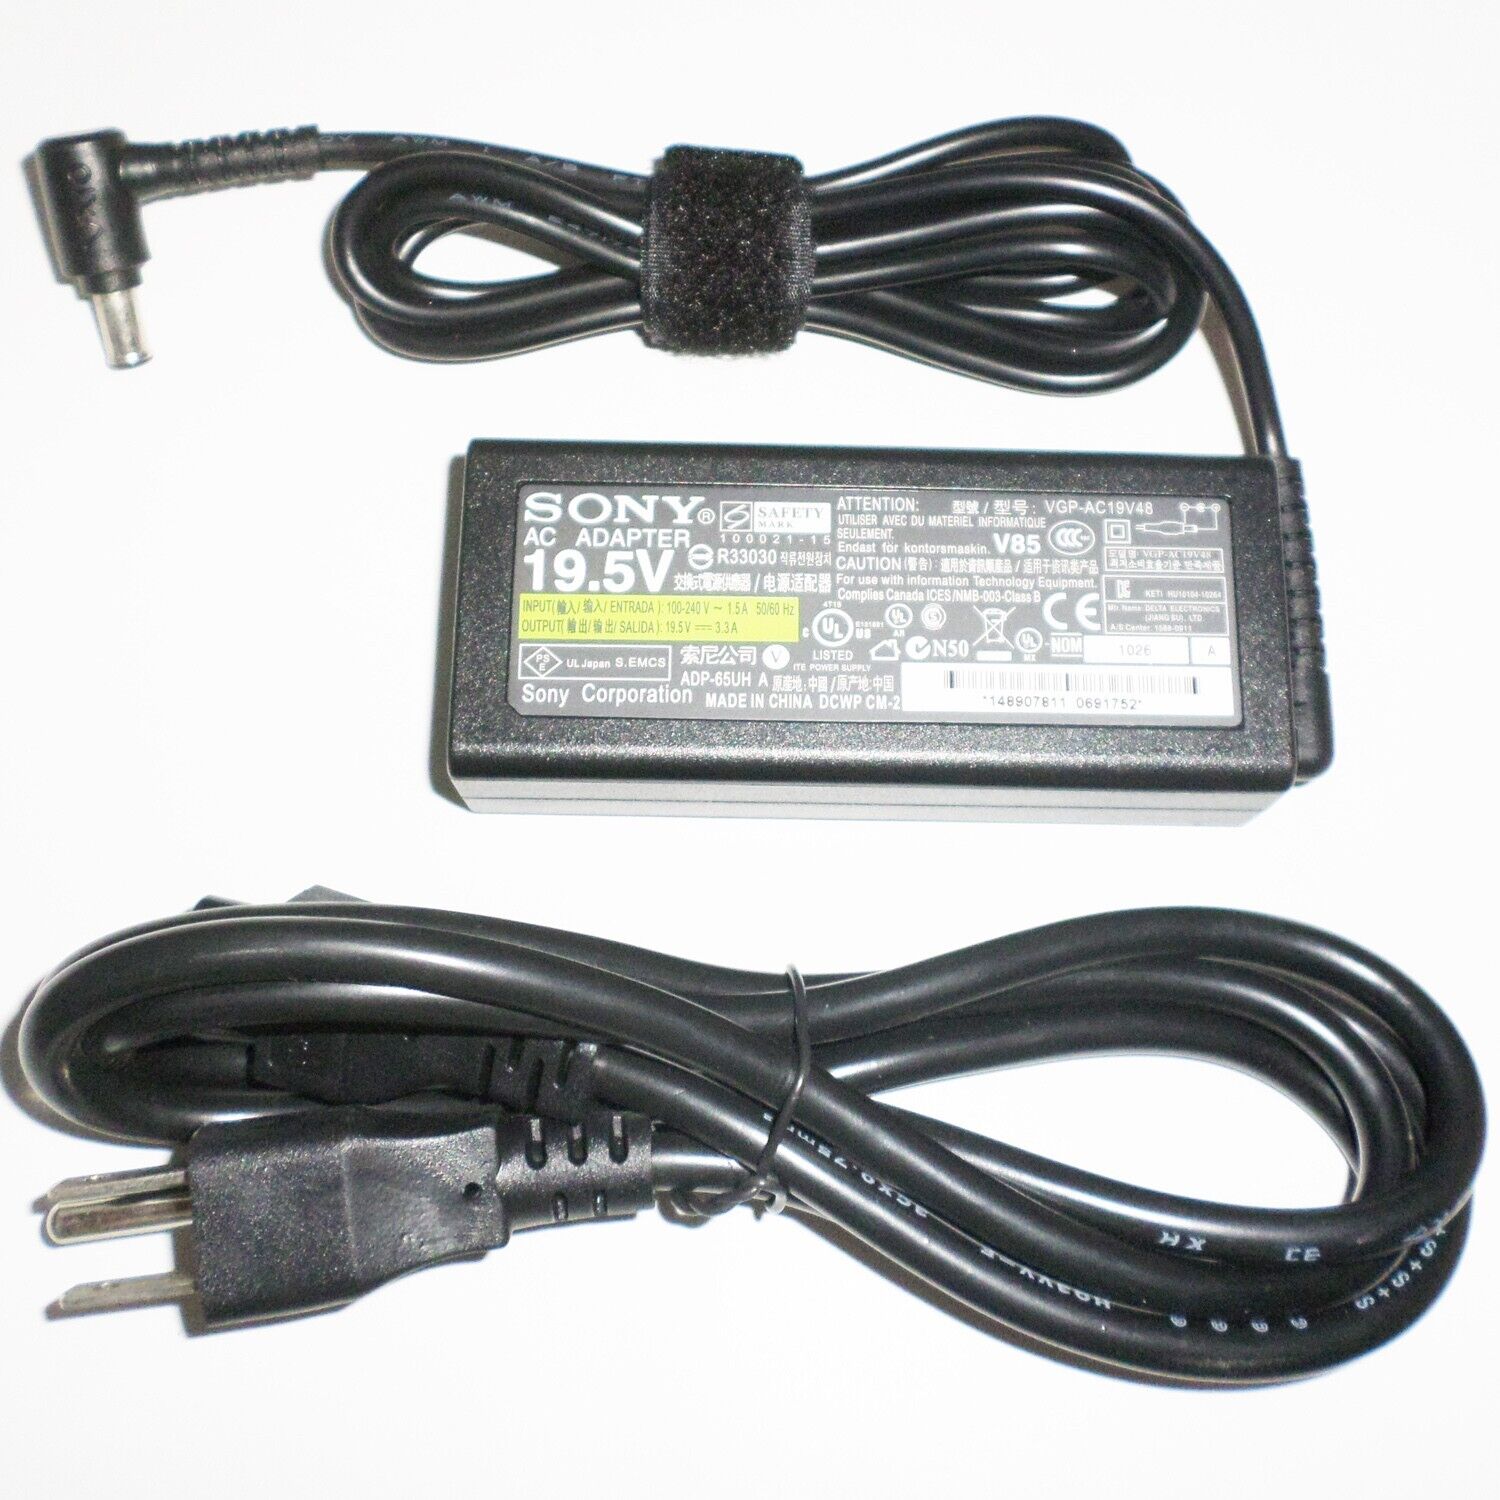 Original AC Adapter For Sony PCGA-AC19V1 PCGA-ACX1 VGP-AC19V43 VGP-AC19V48 +Cord